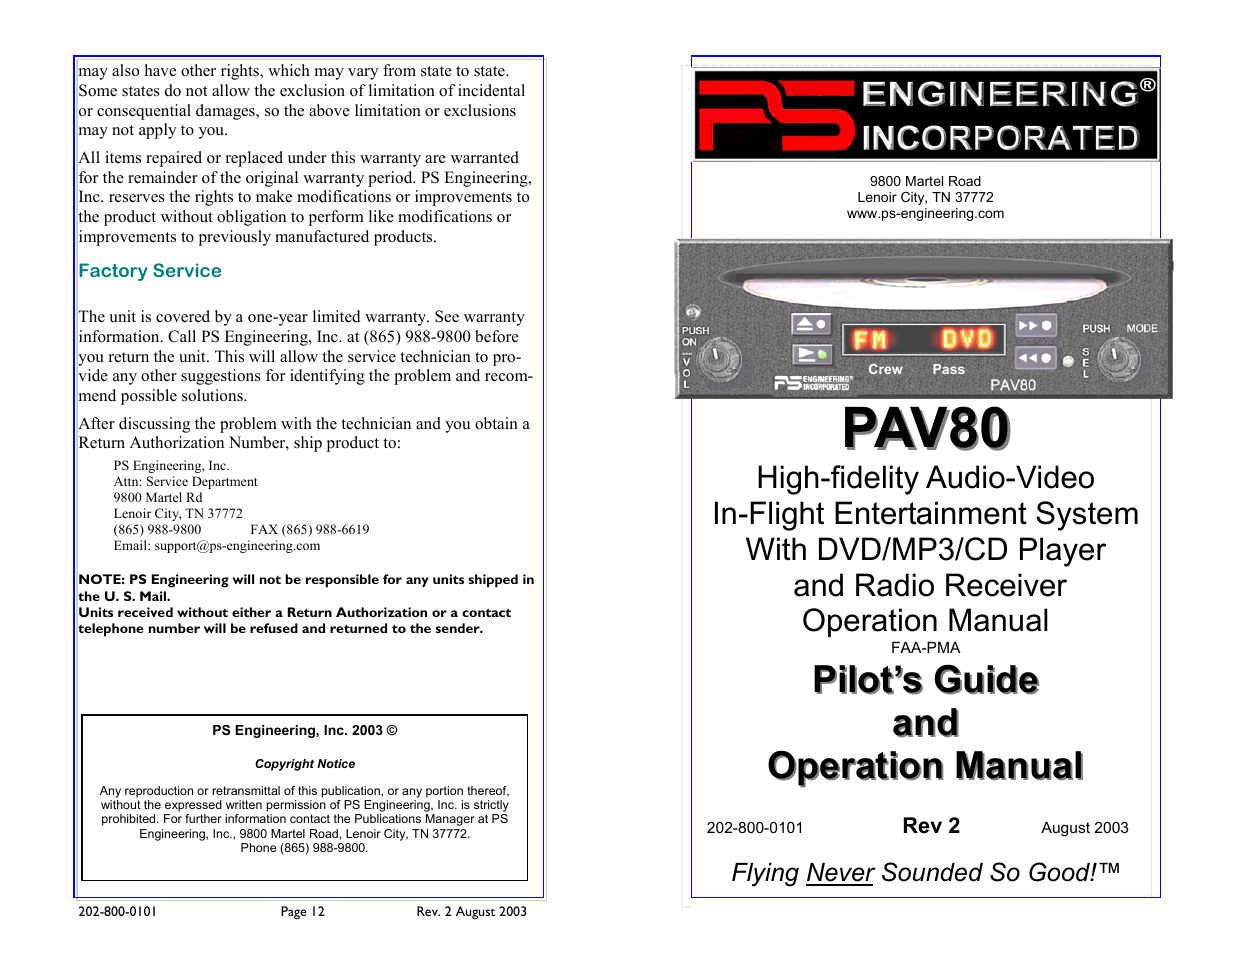 PAV80 Pilot’s Guide